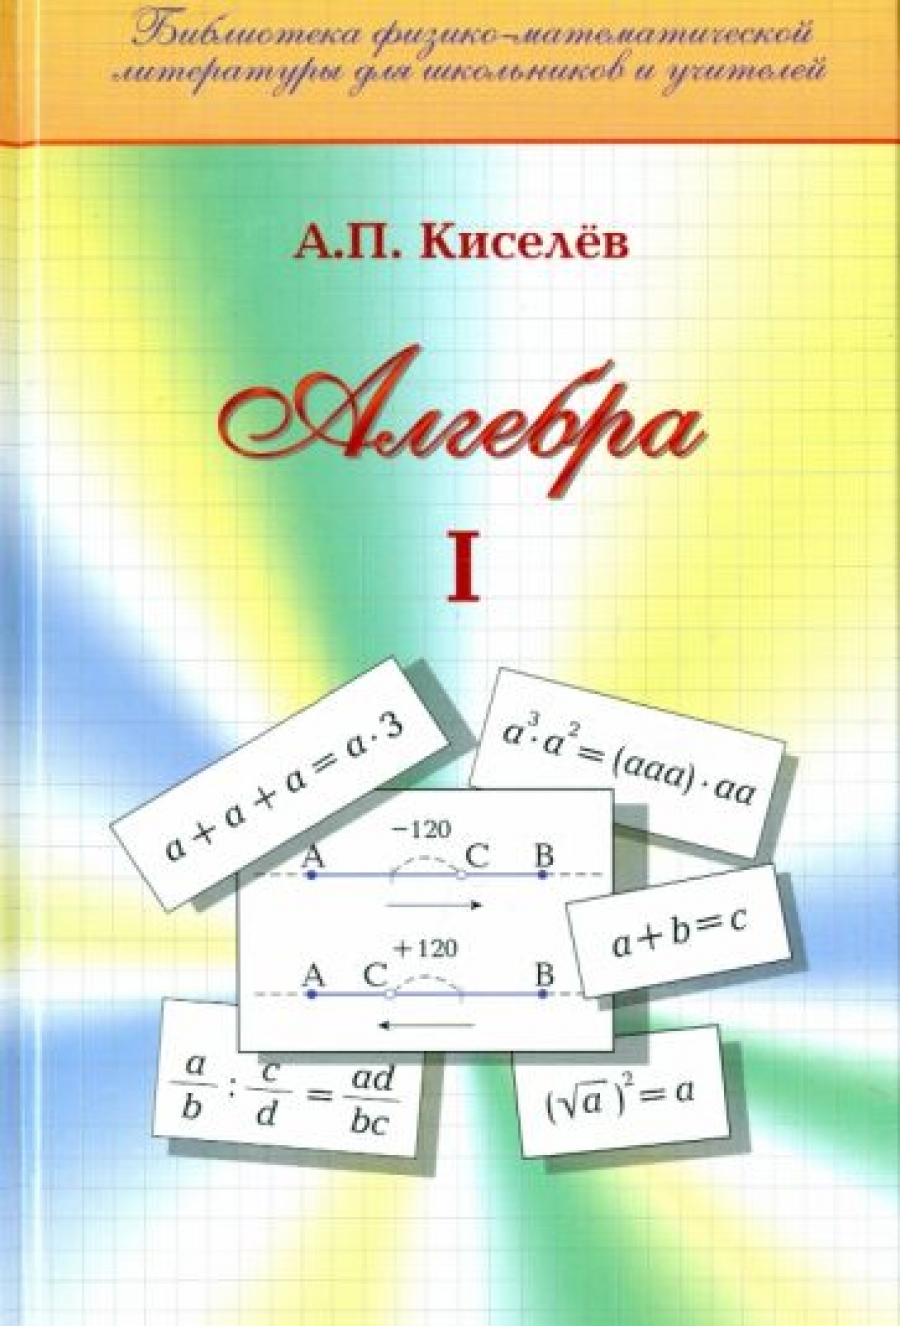 Кисилев А.П. Алгебра. Часть 1 